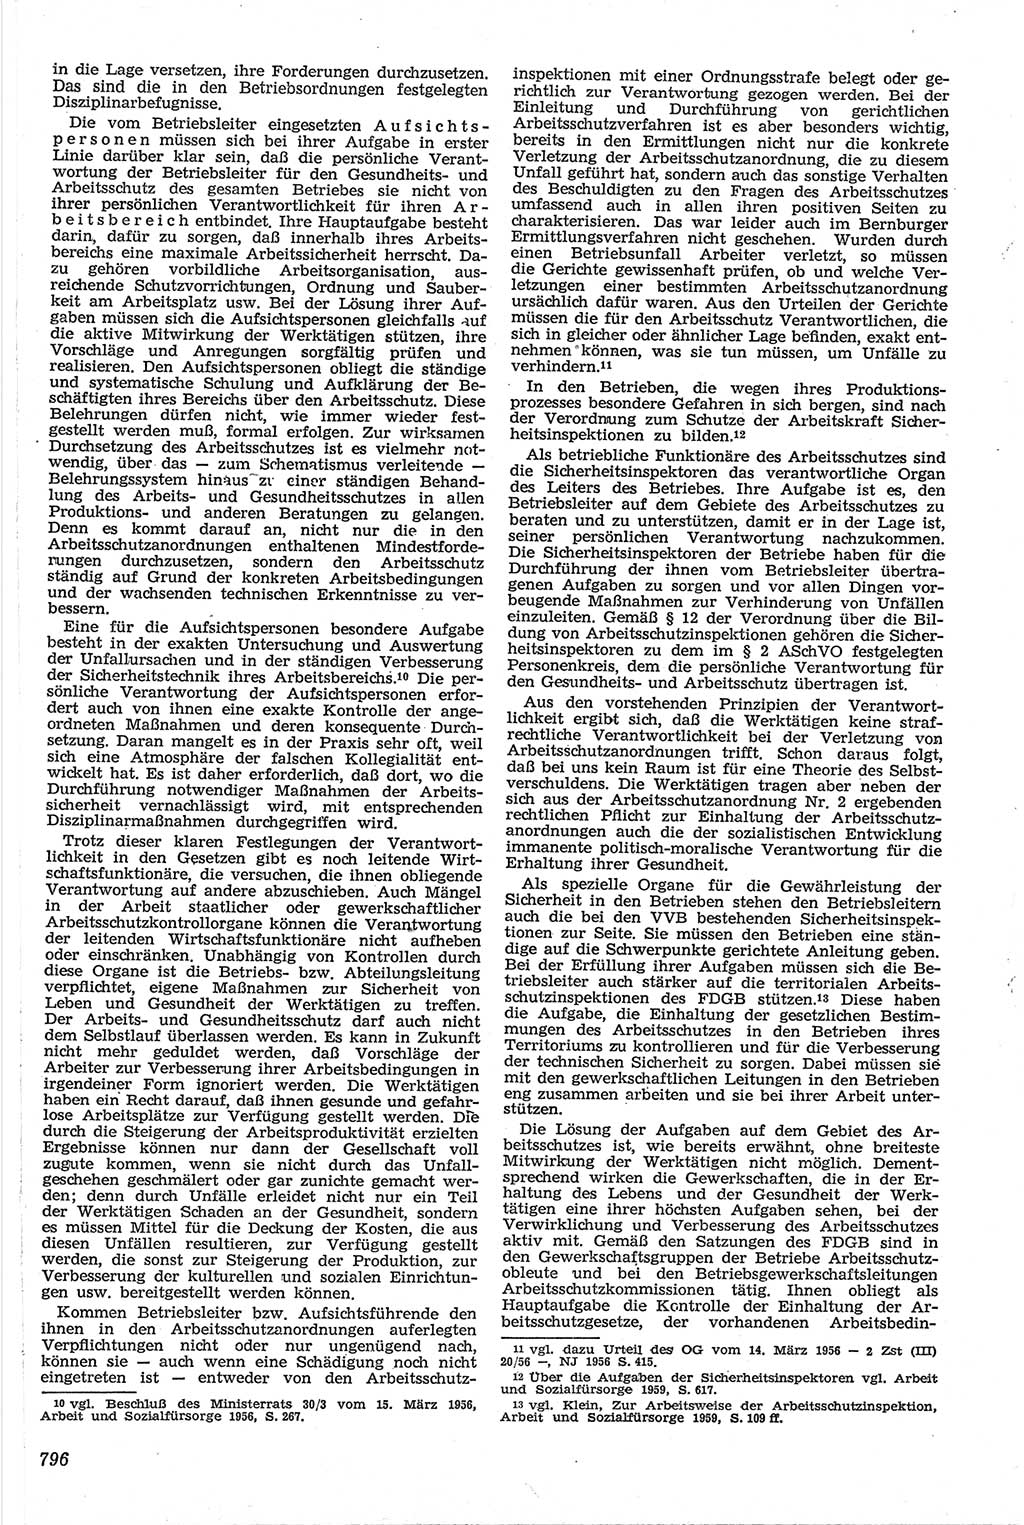 Neue Justiz (NJ), Zeitschrift für Recht und Rechtswissenschaft [Deutsche Demokratische Republik (DDR)], 13. Jahrgang 1959, Seite 796 (NJ DDR 1959, S. 796)